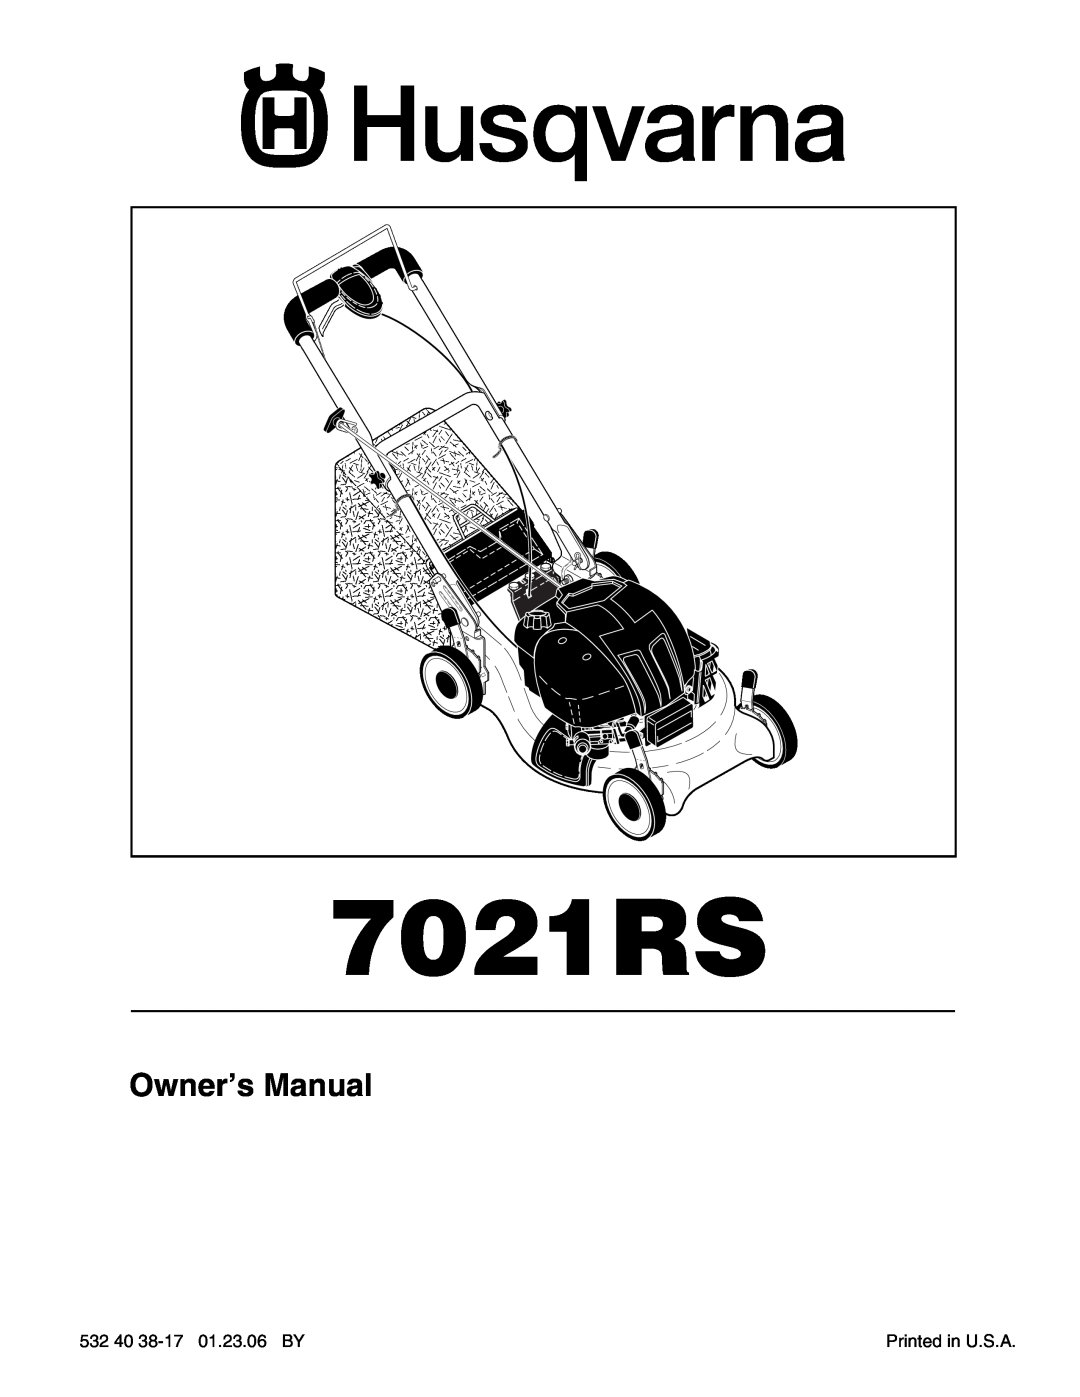 Husqvarna 7021RS owner manual Owner’s Manual 